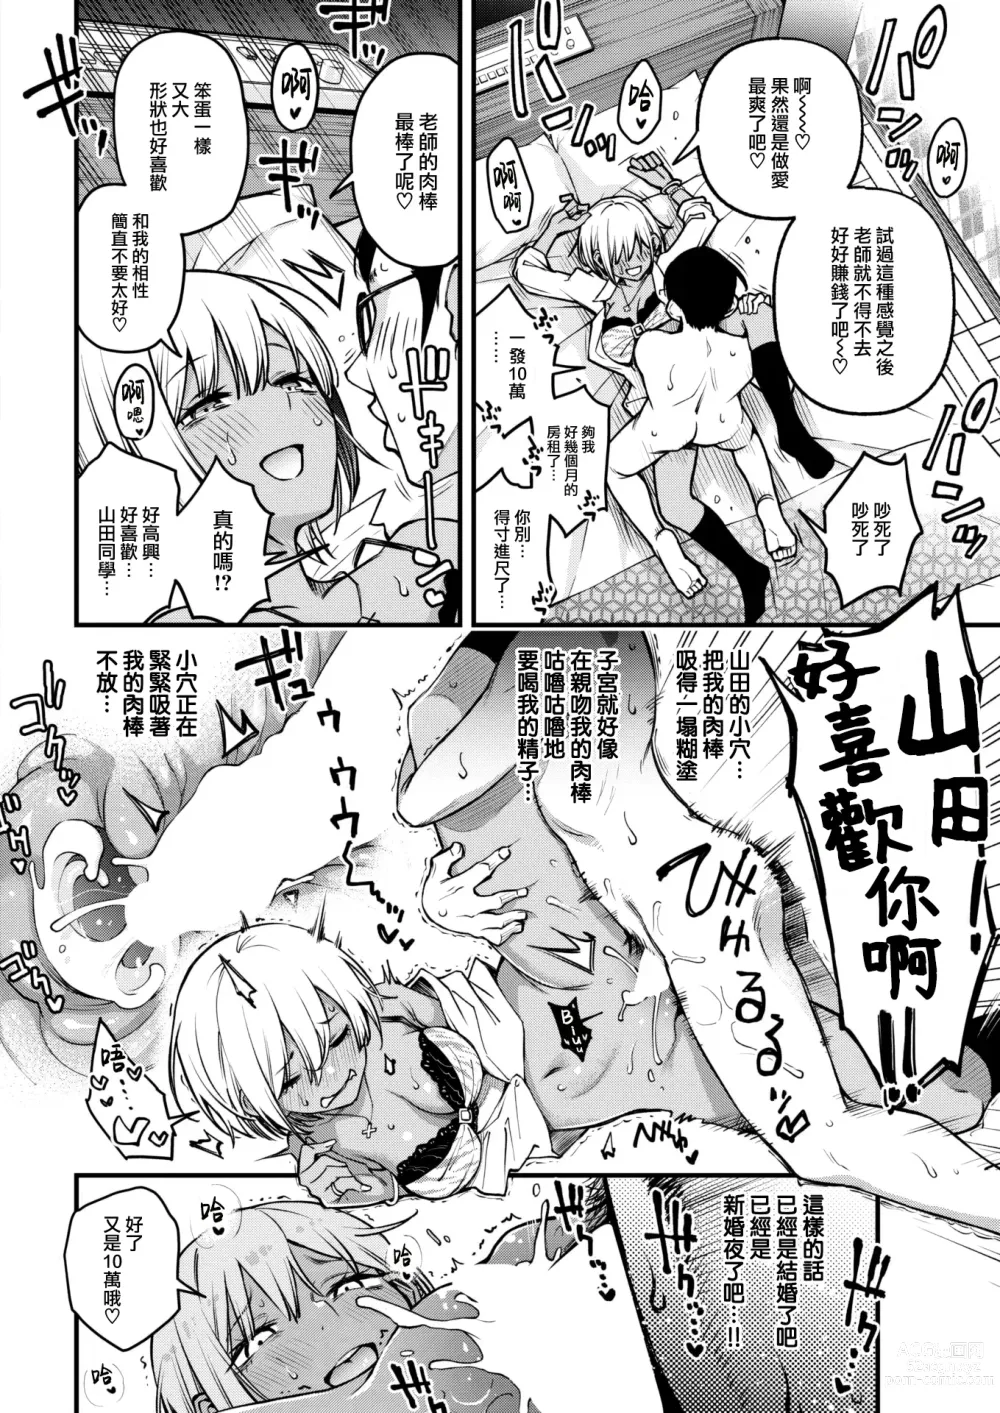 Page 25 of manga Sensei Matching